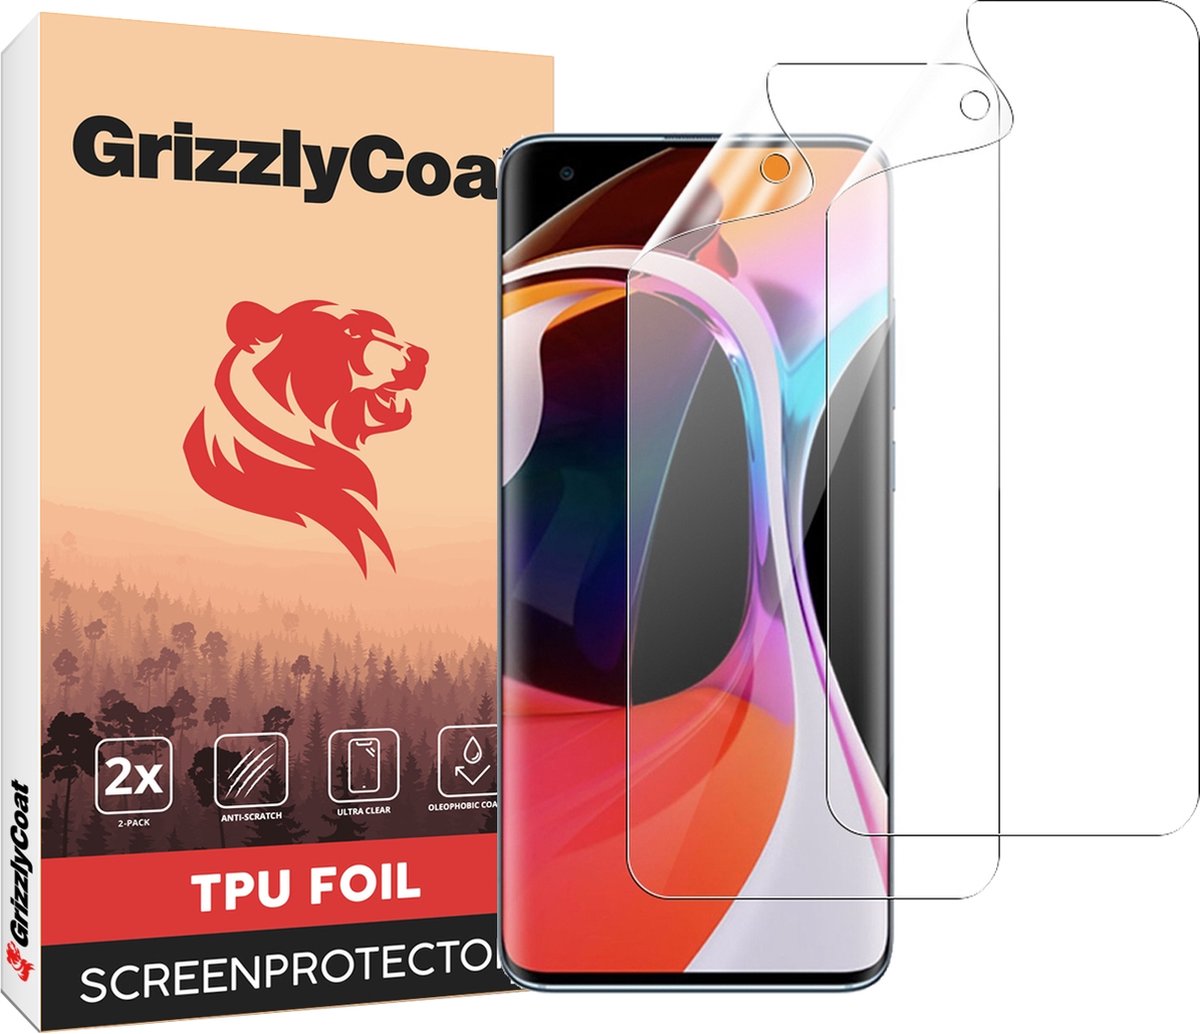 GrizzlyCoat - Screenprotector geschikt voor Xiaomi Mi 10 Hydrogel TPU | GrizzlyCoat Screenprotector - Case Friendly + Installatie Frame (2-Pack)